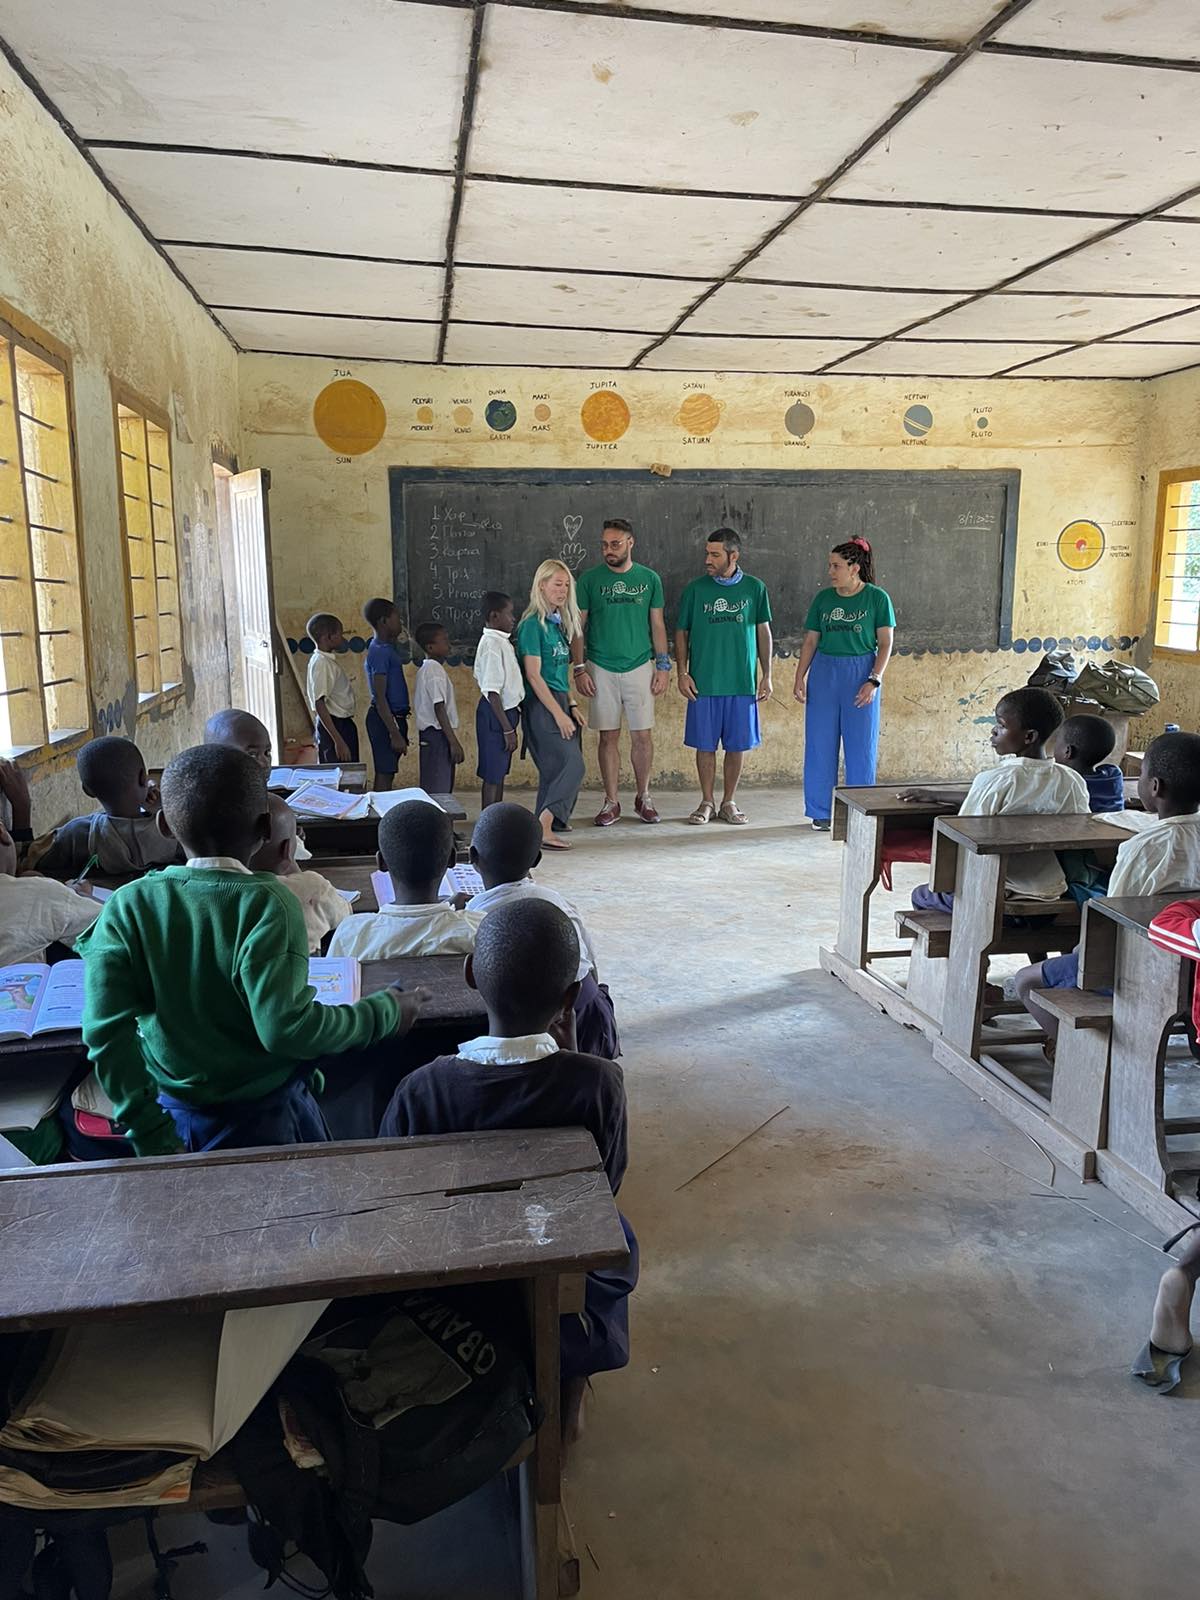 Ξάνθη: Πρώτη τηλεπικοινωνία των μαθητών του 3ου Λυκείου με τρία παιδιά από την Μπουκόμπα της Τανζανίας